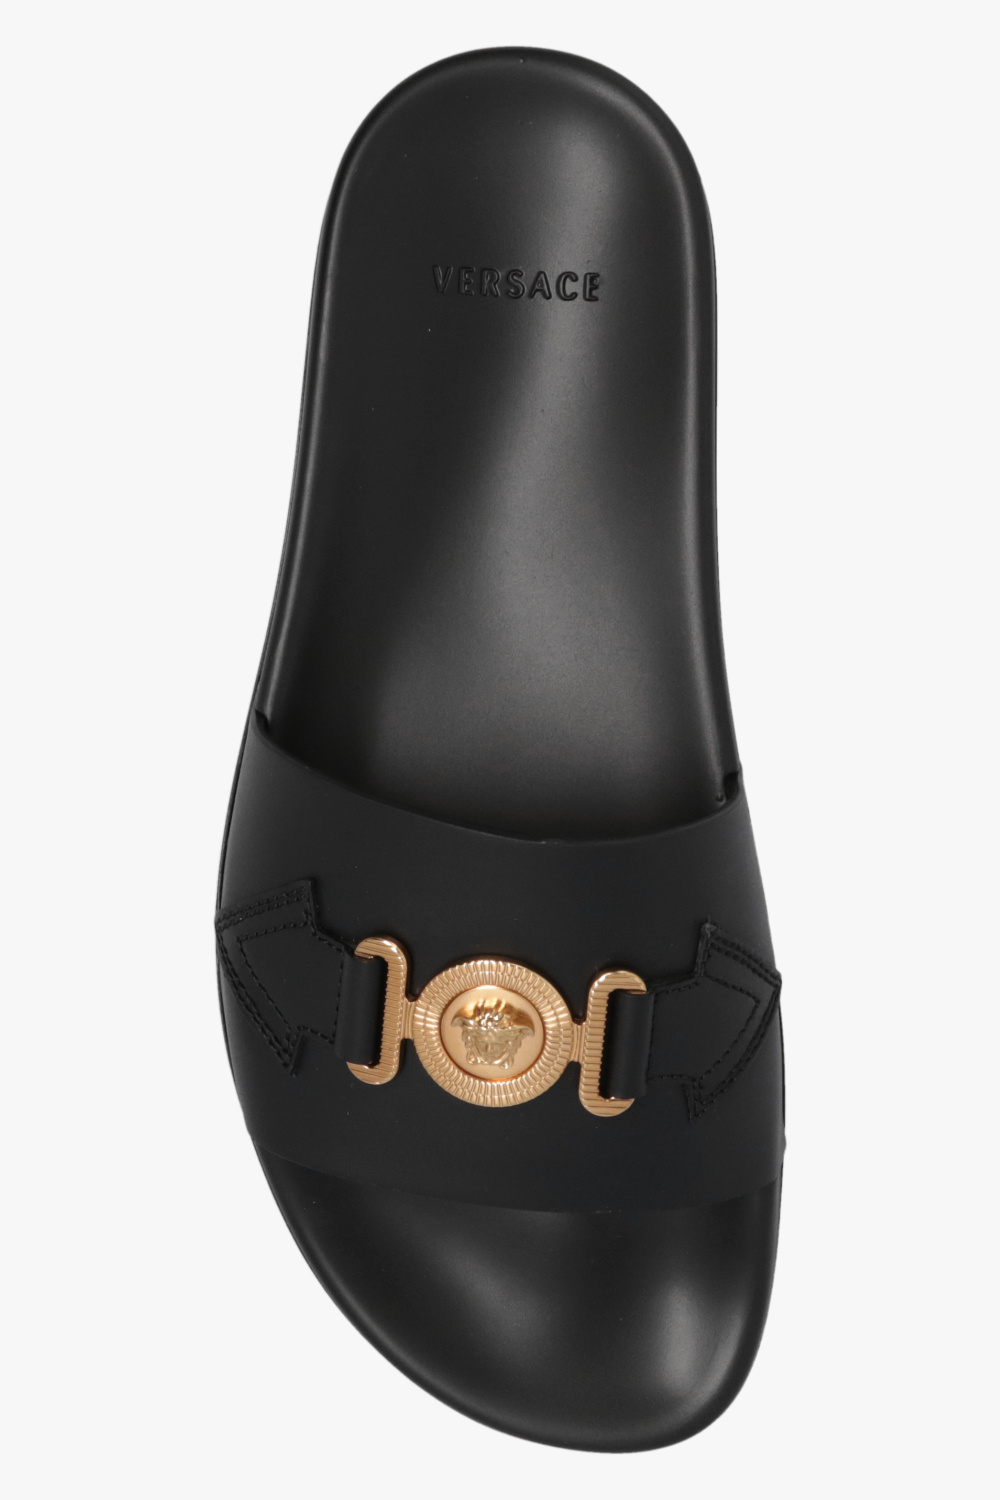 Versace zapatillas de running Inov-8 pronador talla 40.5